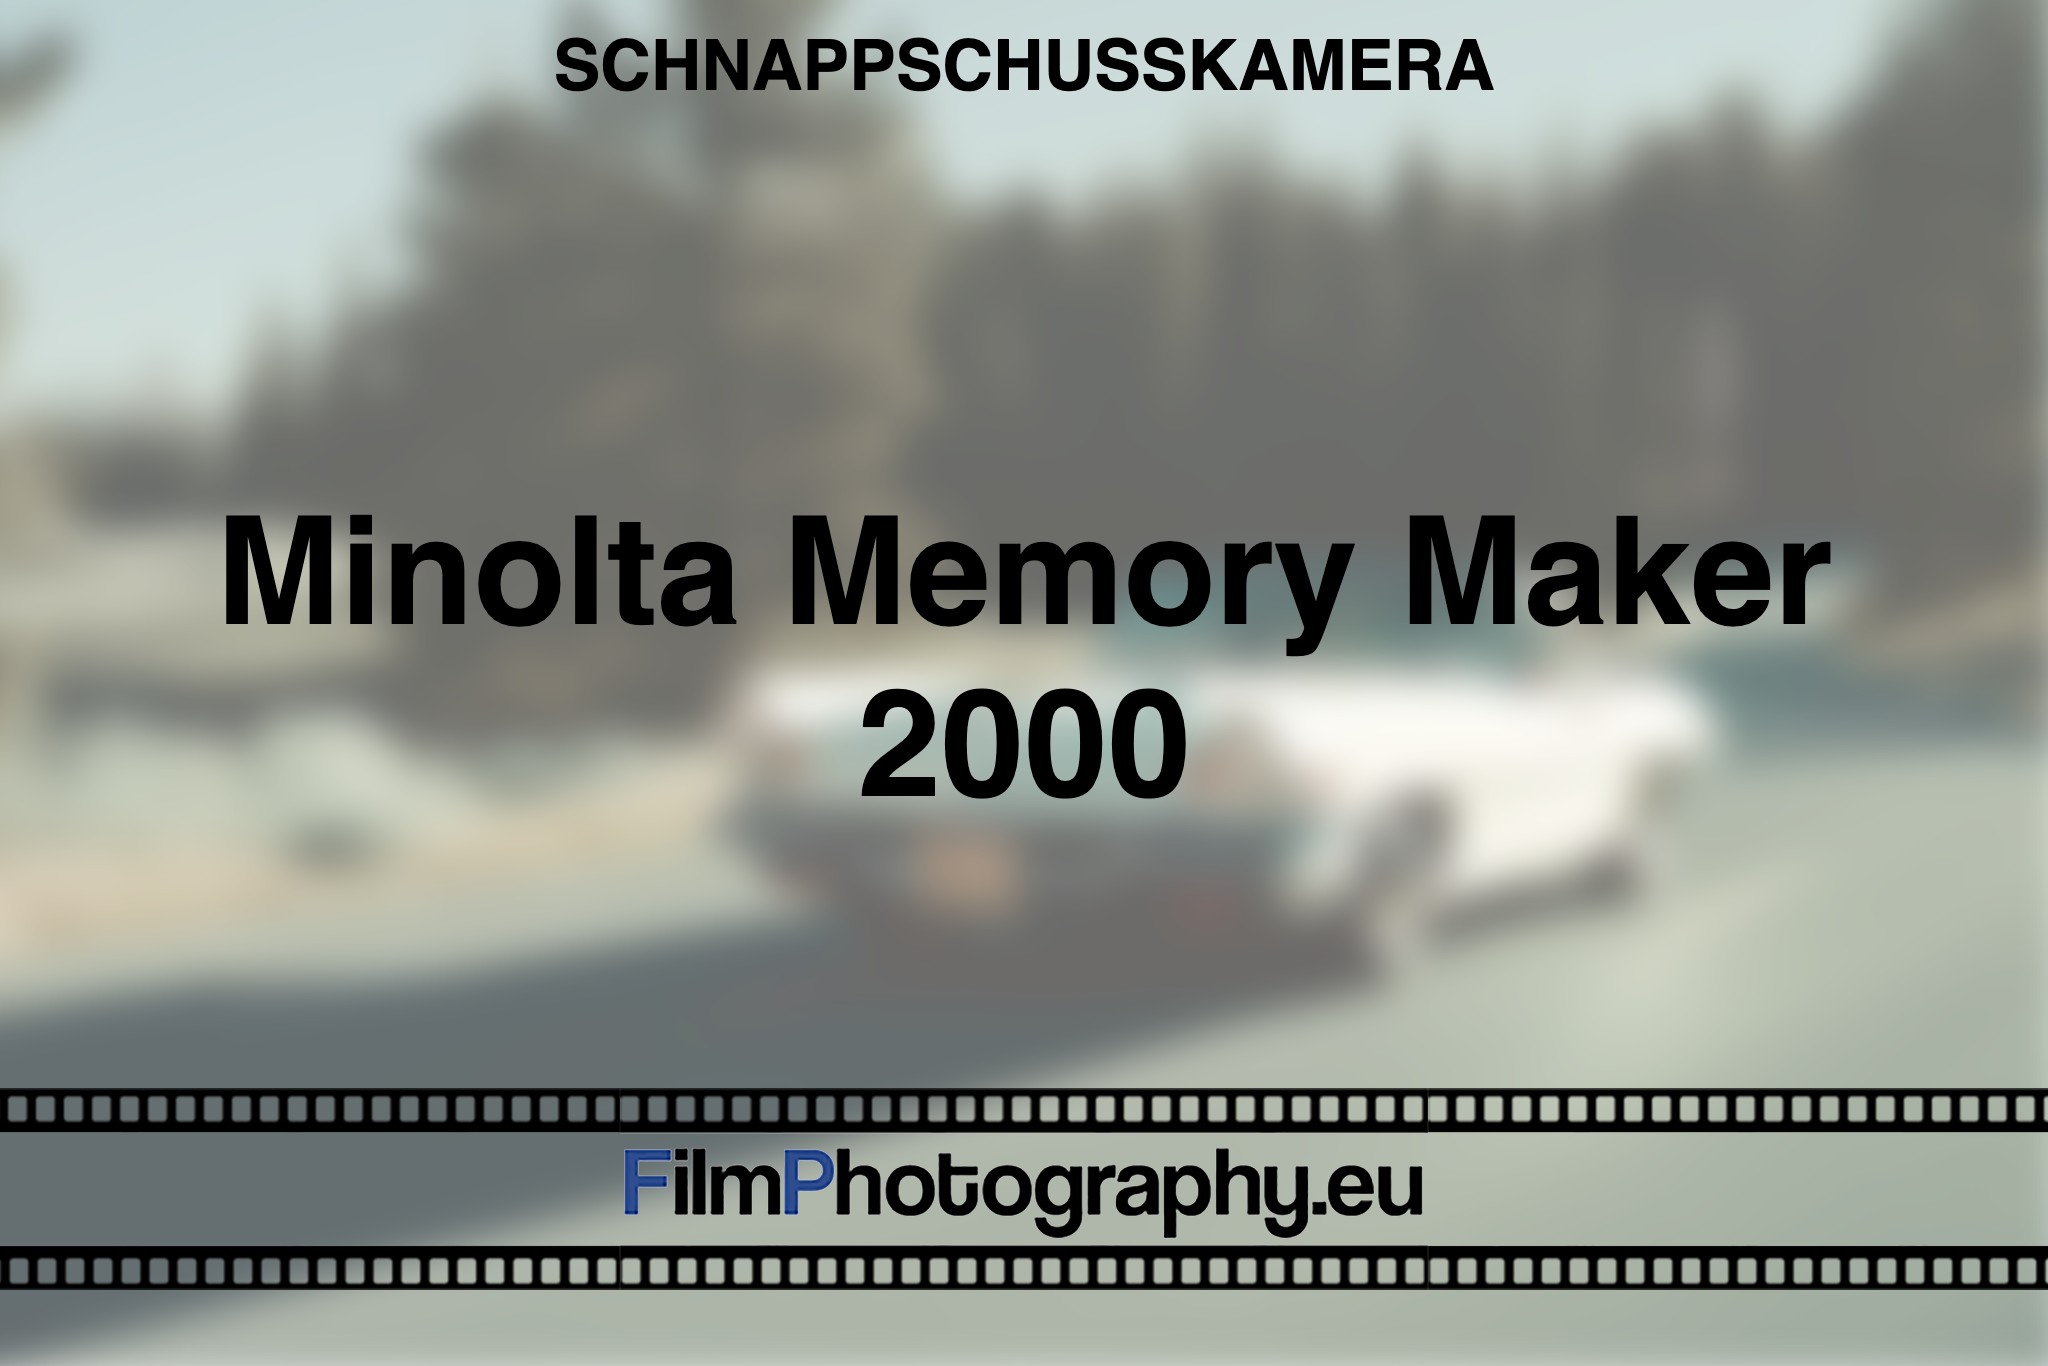 minolta-memory-maker-2000-schnappschusskamera-bnv